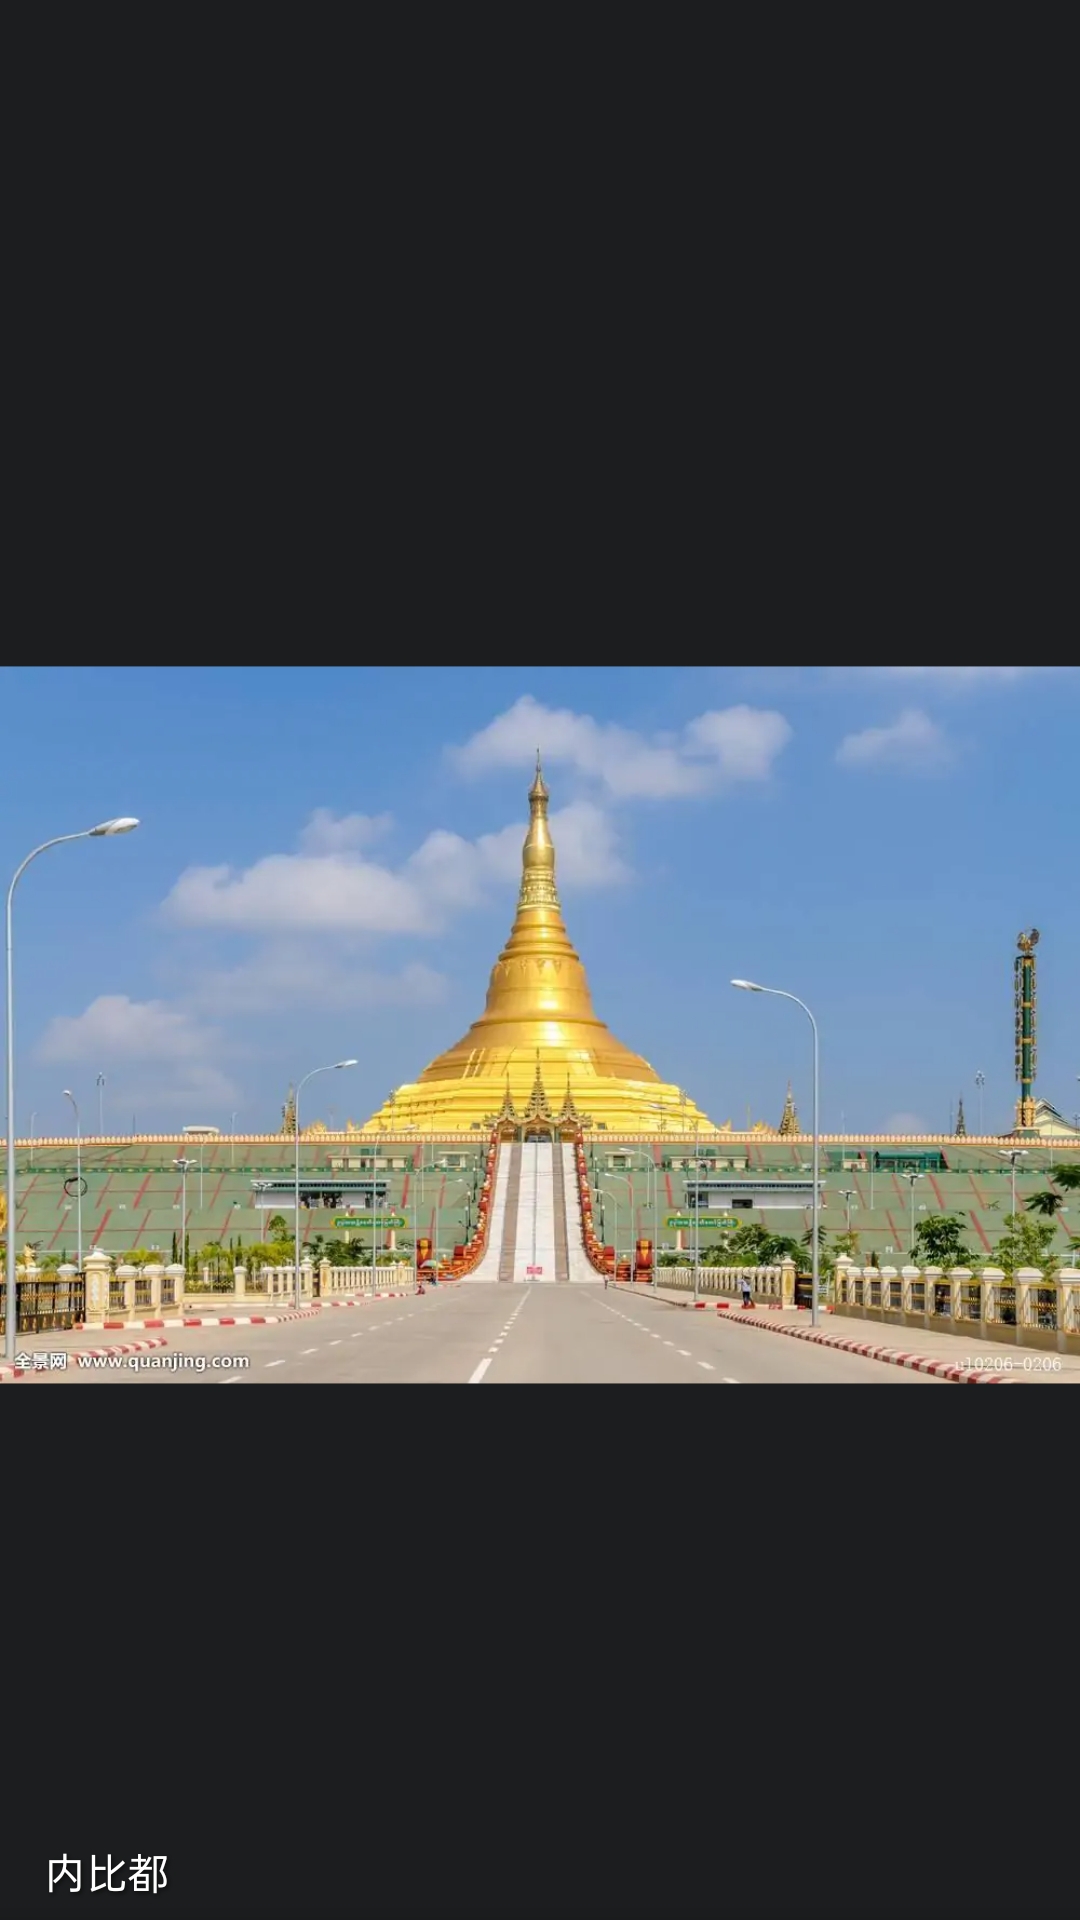 内比都（Naypyidaw），是缅甸联邦共和国的首都，位于缅甸中部山区的彬马那（平满纳、彬文那、宾马